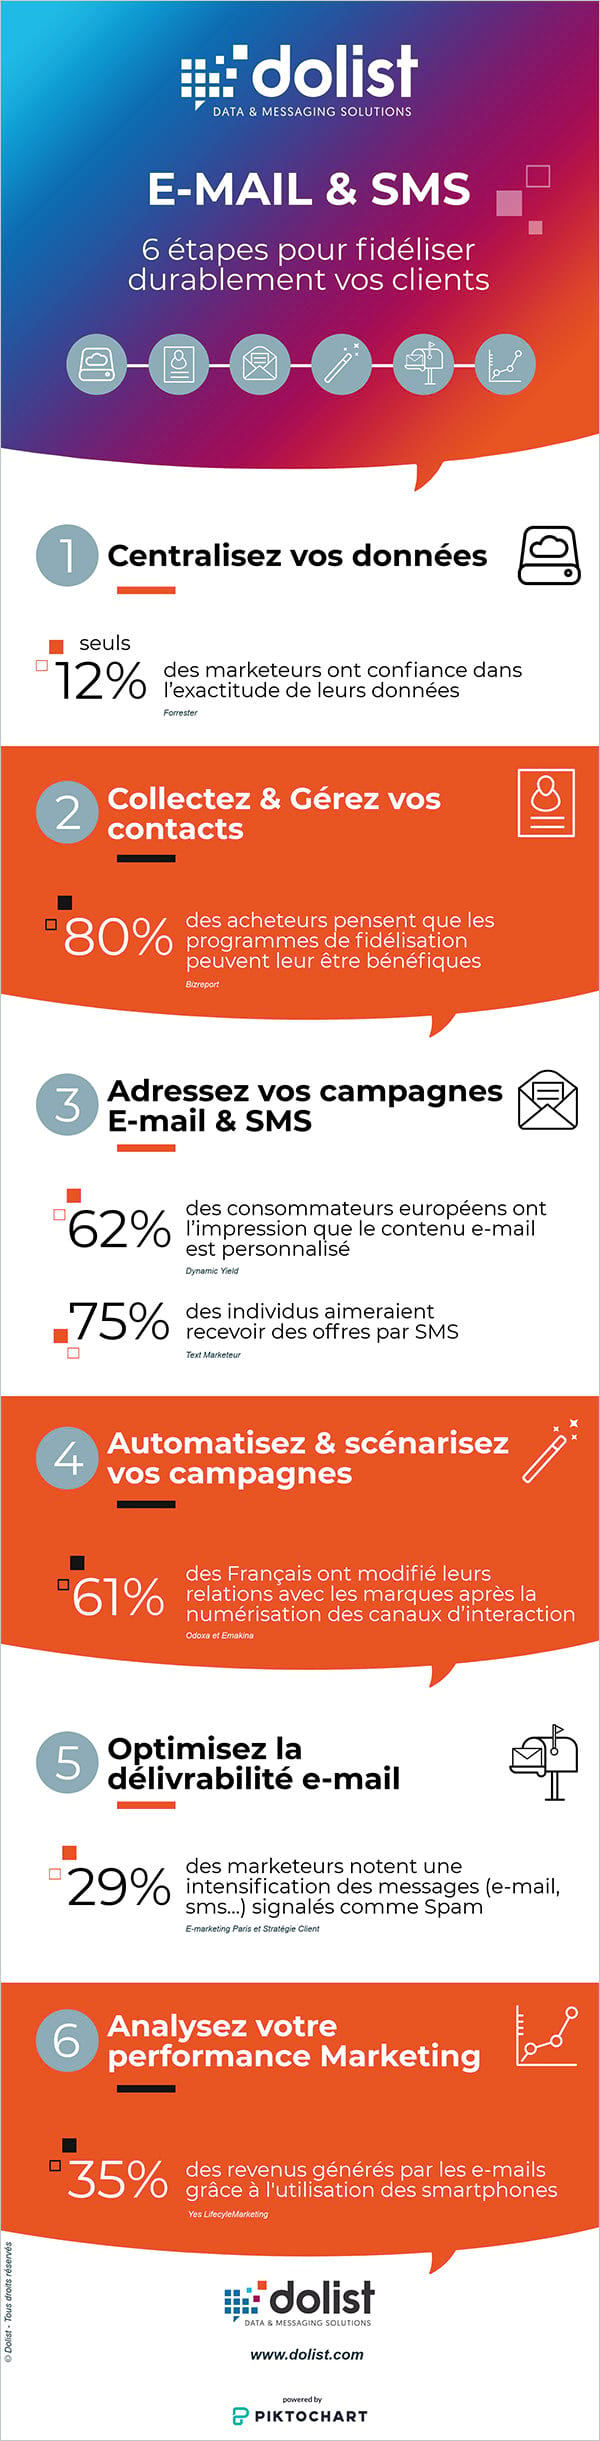 Infographie : 6 steps pour fidéliser vos clients grâce à l’e-mail marketing